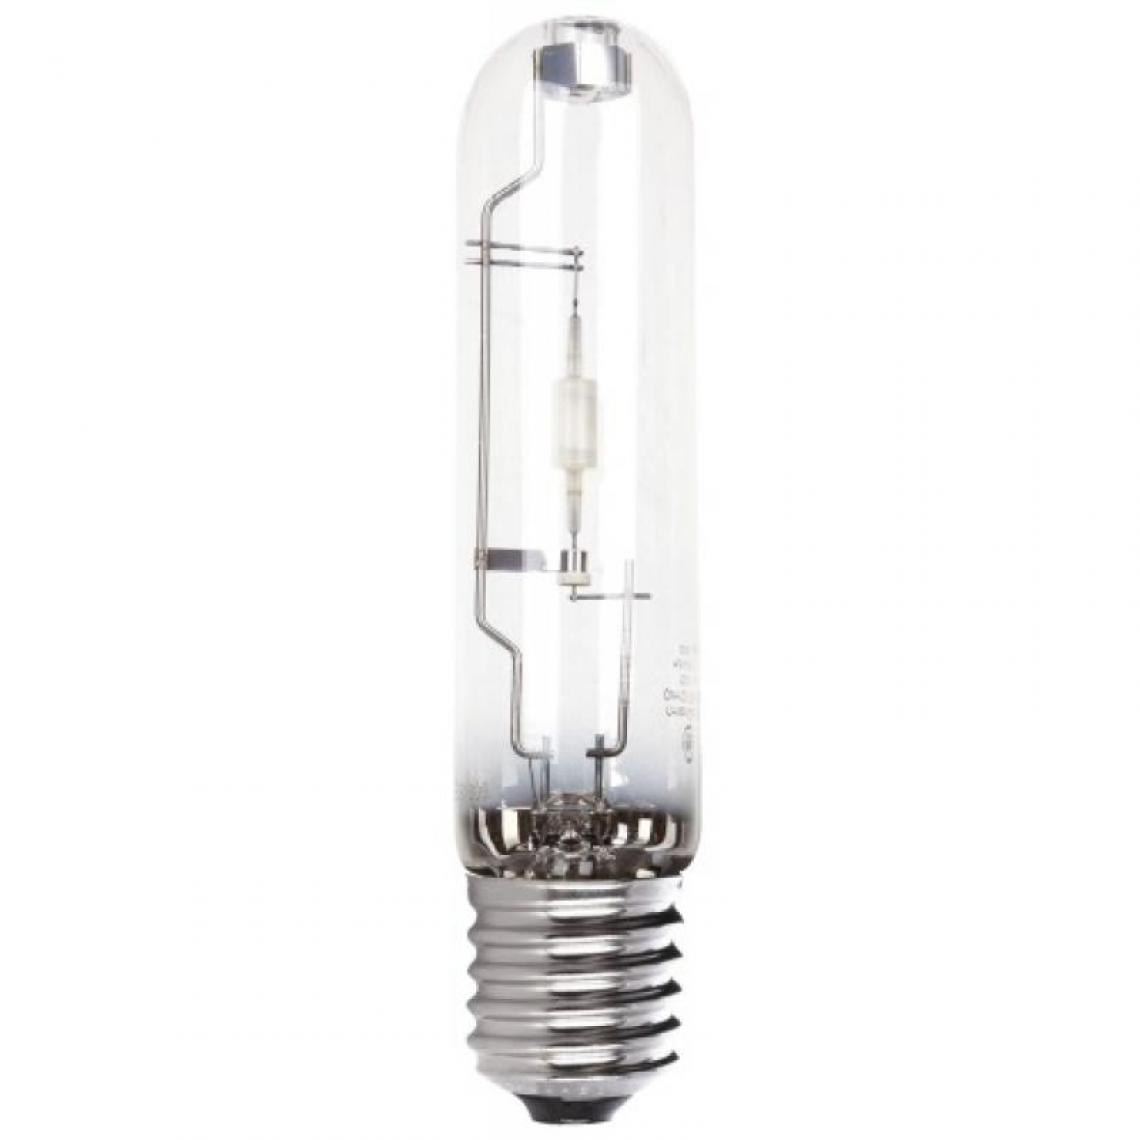 Ge Lighting - Lampe iodure métallique tubulaire E40 150W 3000k - Ampoules LED